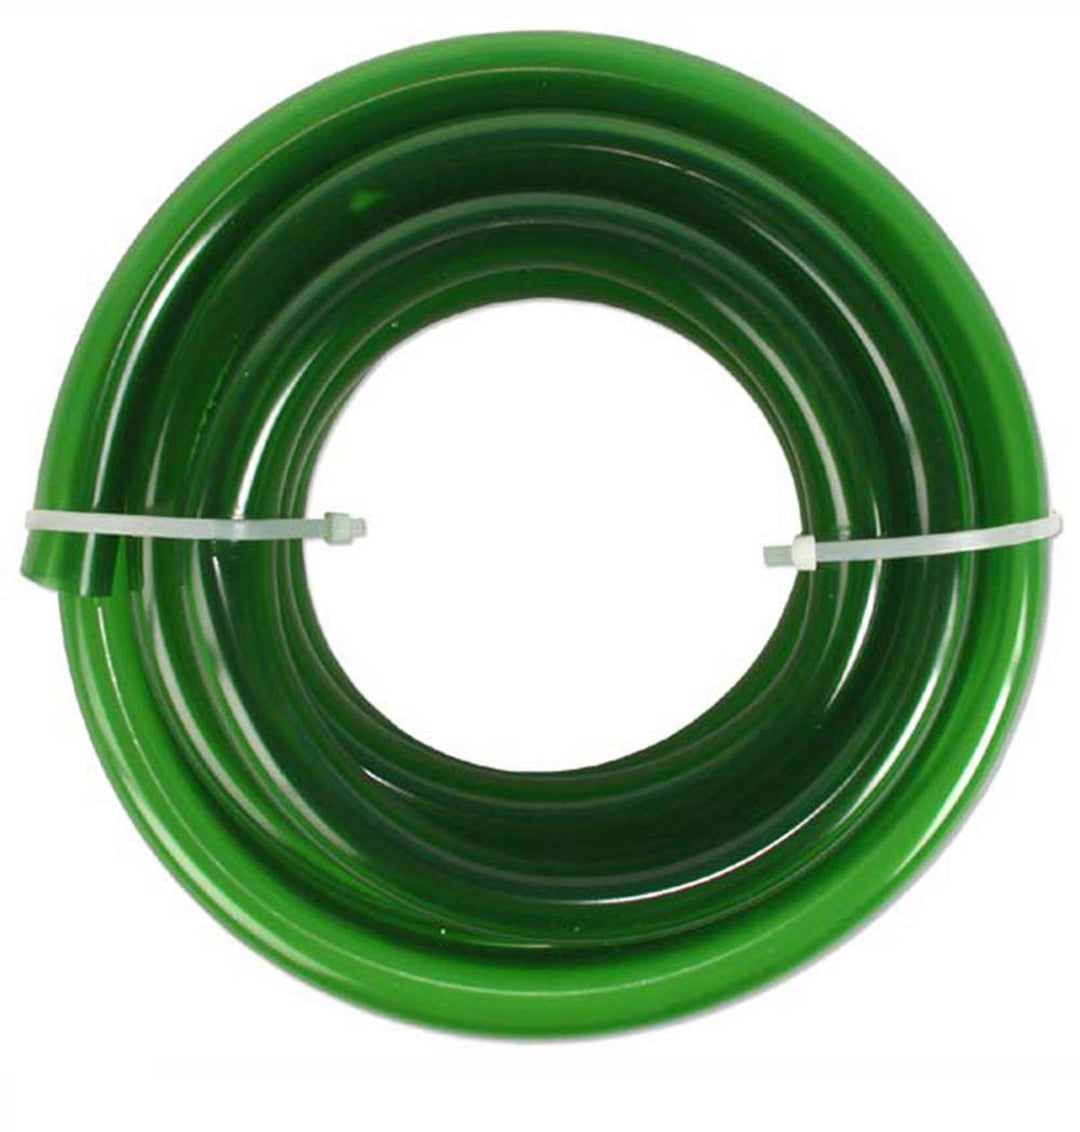 Hose Tubing Pipe Green Flexible - Per Foot